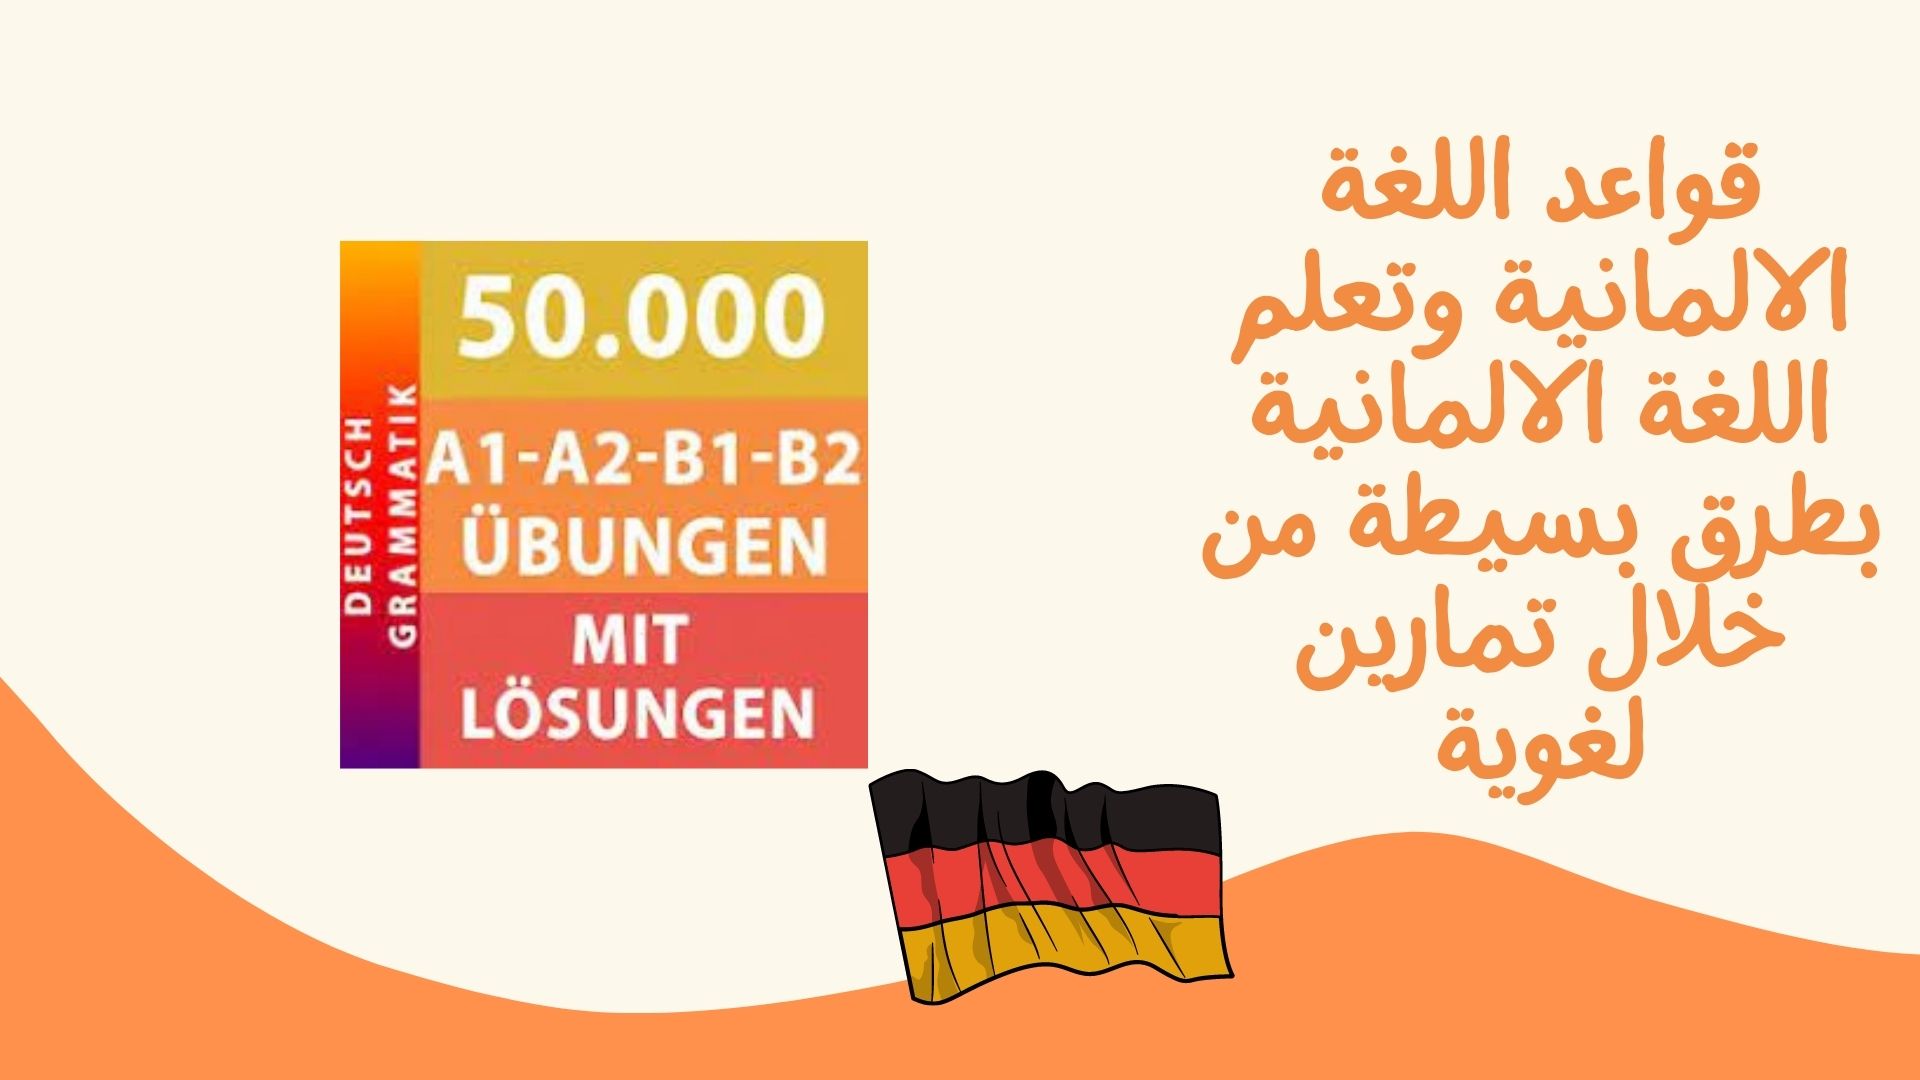 قواعد اللغة الالمانية وتعلم اللغة الالمانية بطرق بسيطة من خلال تمارين لغوية